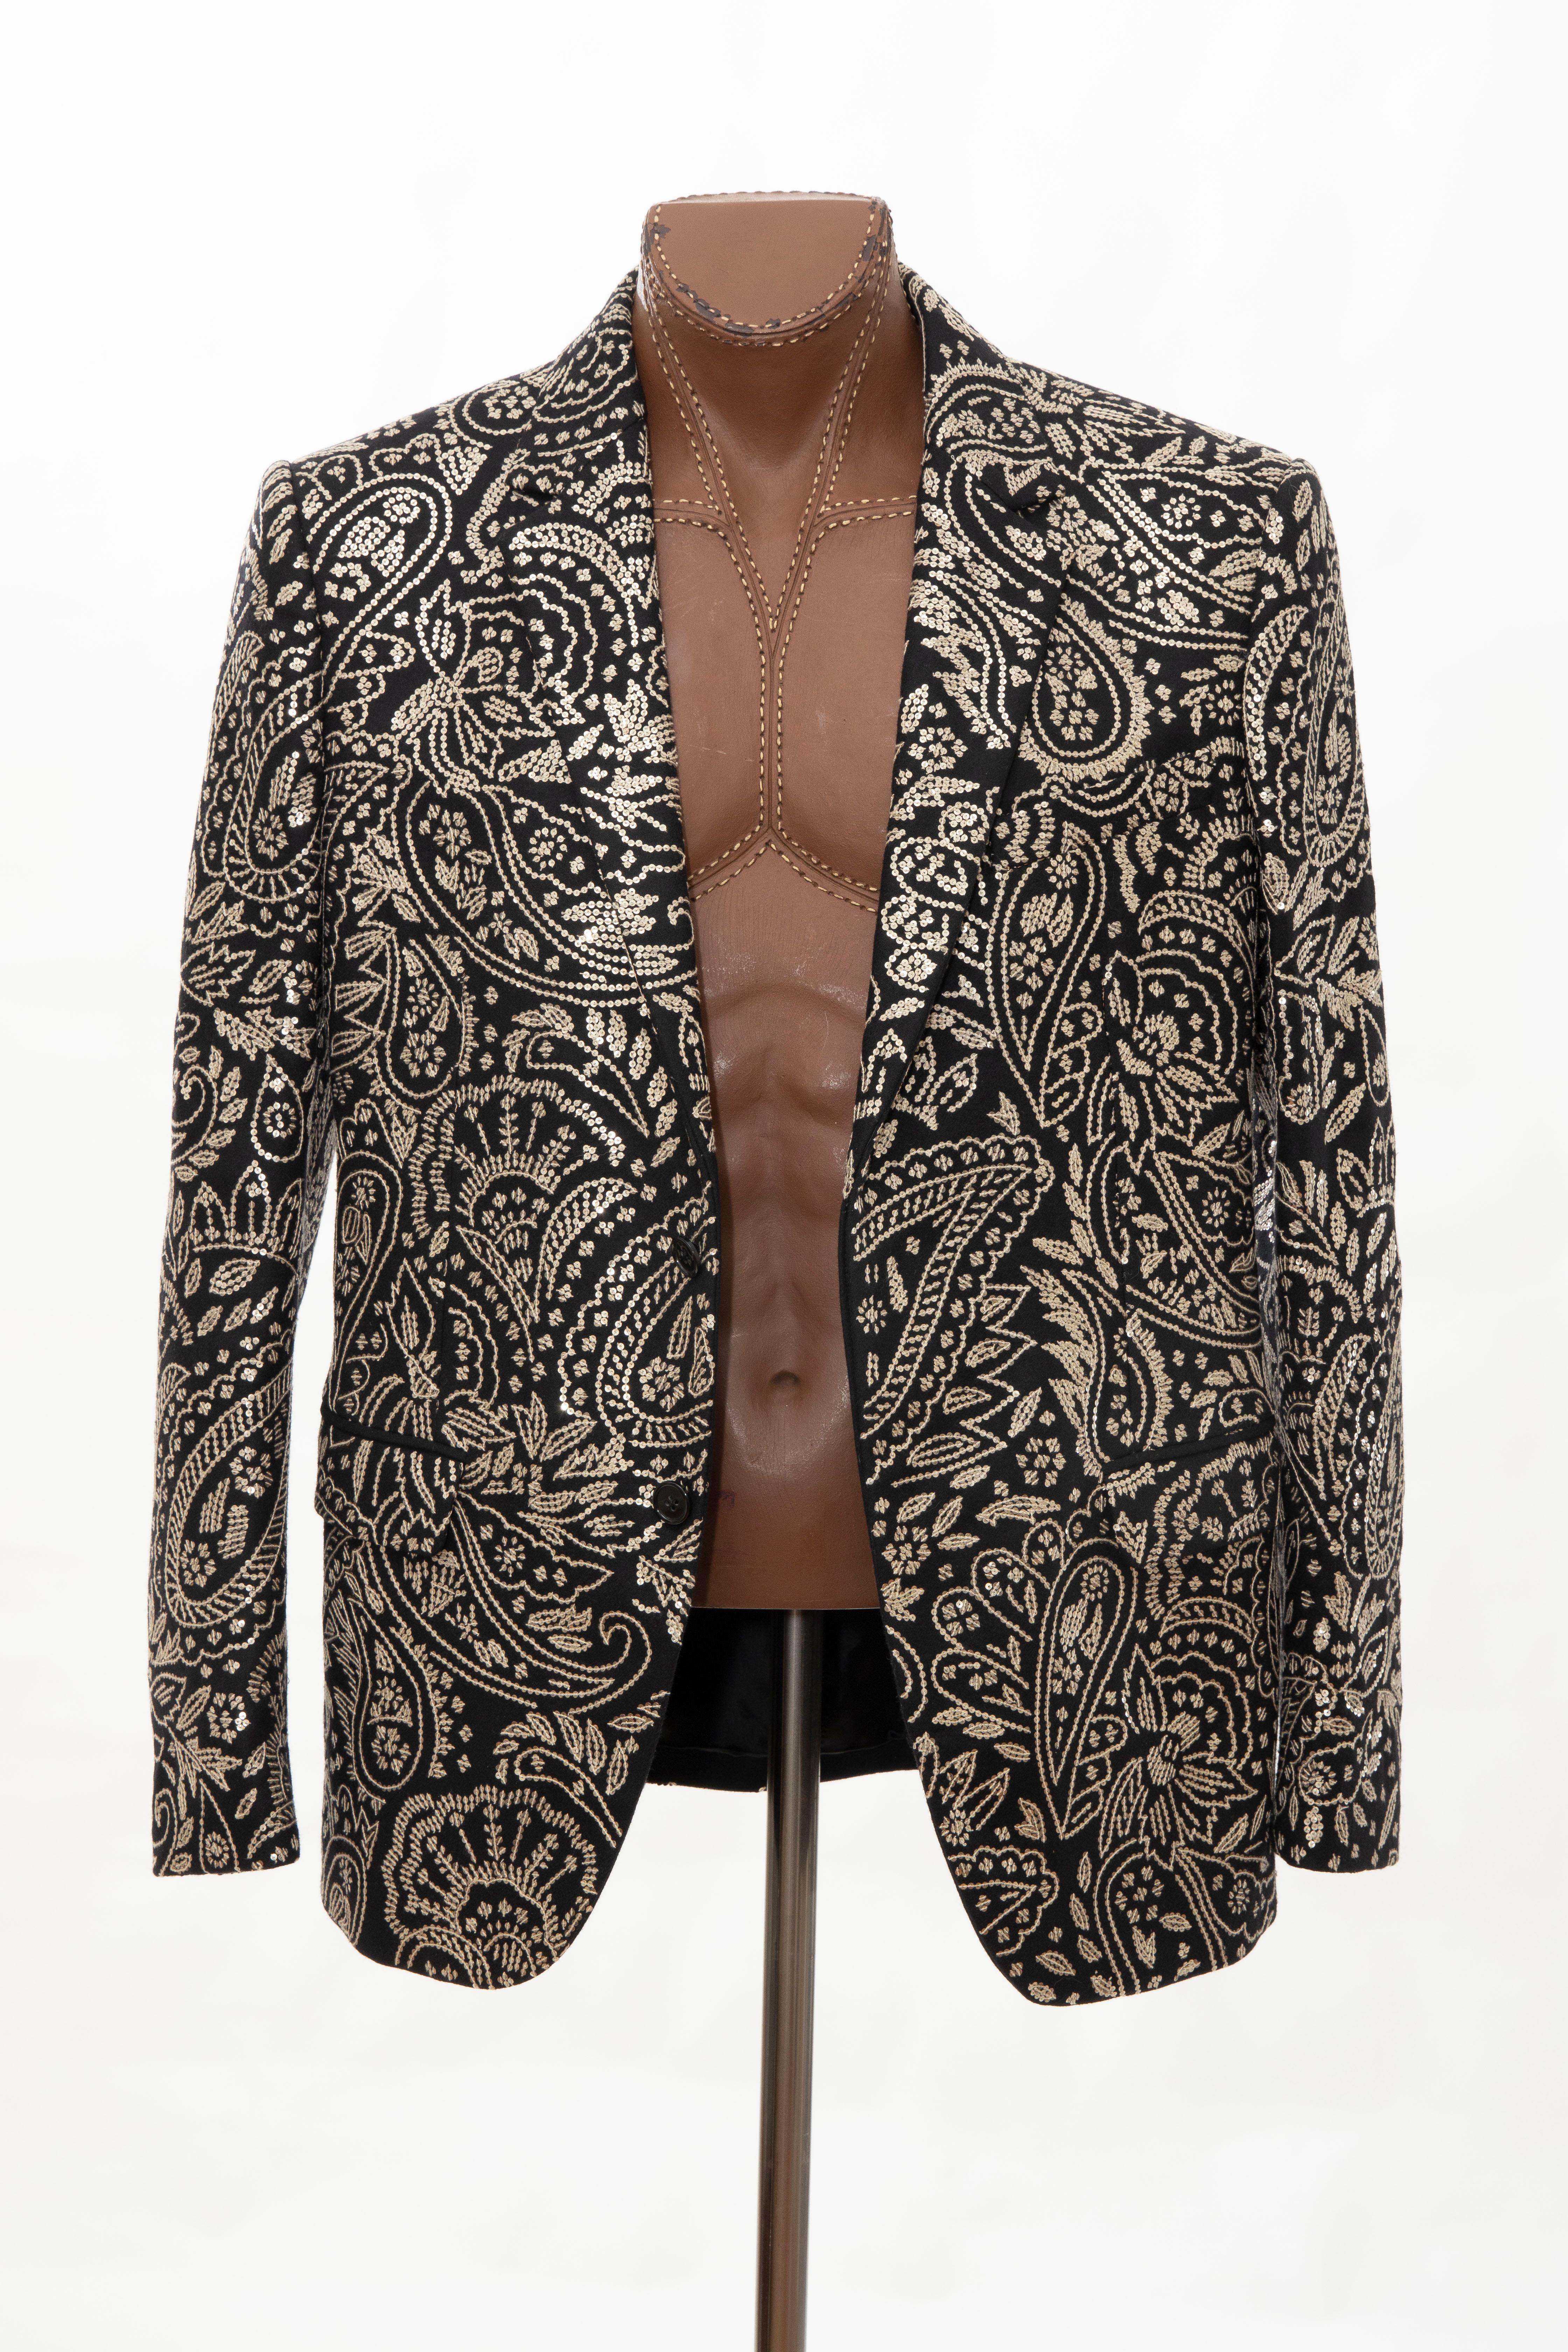 Alexander McQueen Men's Runway Black Wool Embroidered Sequin Blazer, Fall 2016 9